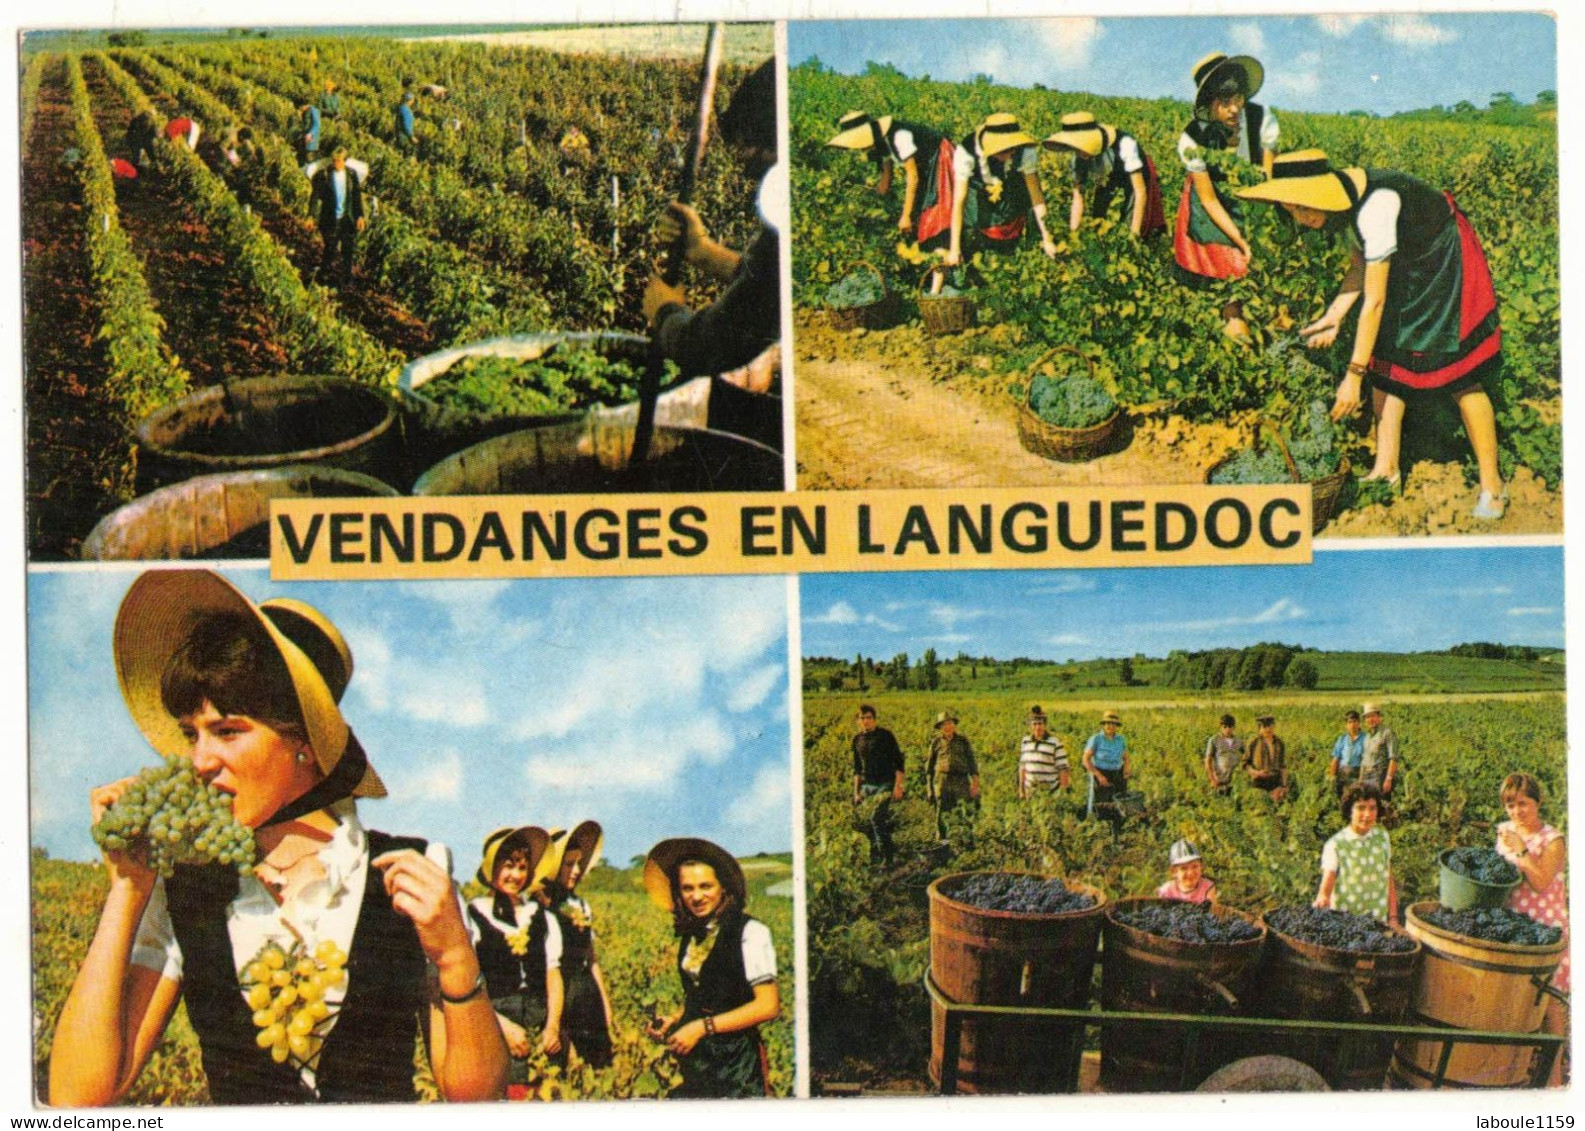 OCCITANIE LANGUEDOC ROUSSILLON MULTIVUES - VENDANGE EN LANGUEDOC - VITICULTURE RECOLTE CEPAGE RAISIN COMPORTES FOLKLORE - Languedoc-Roussillon